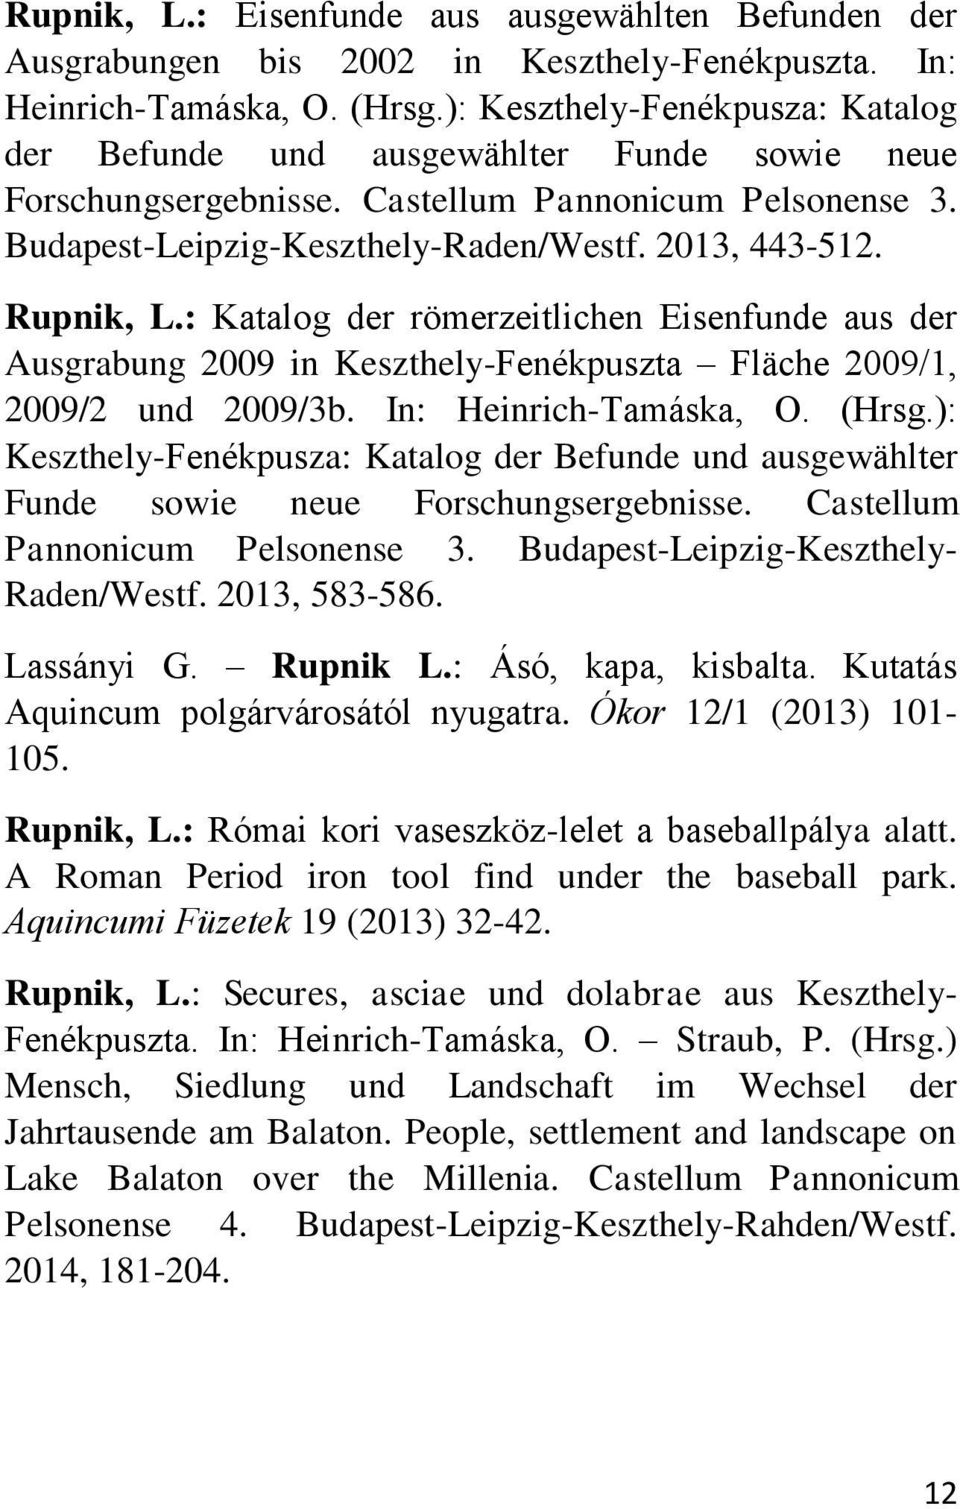 Rupnik, L.: Katalog der römerzeitlichen Eisenfunde aus der Ausgrabung 2009 in Keszthely-Fenékpuszta Fläche 2009/1, 2009/2 und 2009/3b. In: Heinrich-Tamáska, O. (Hrsg.